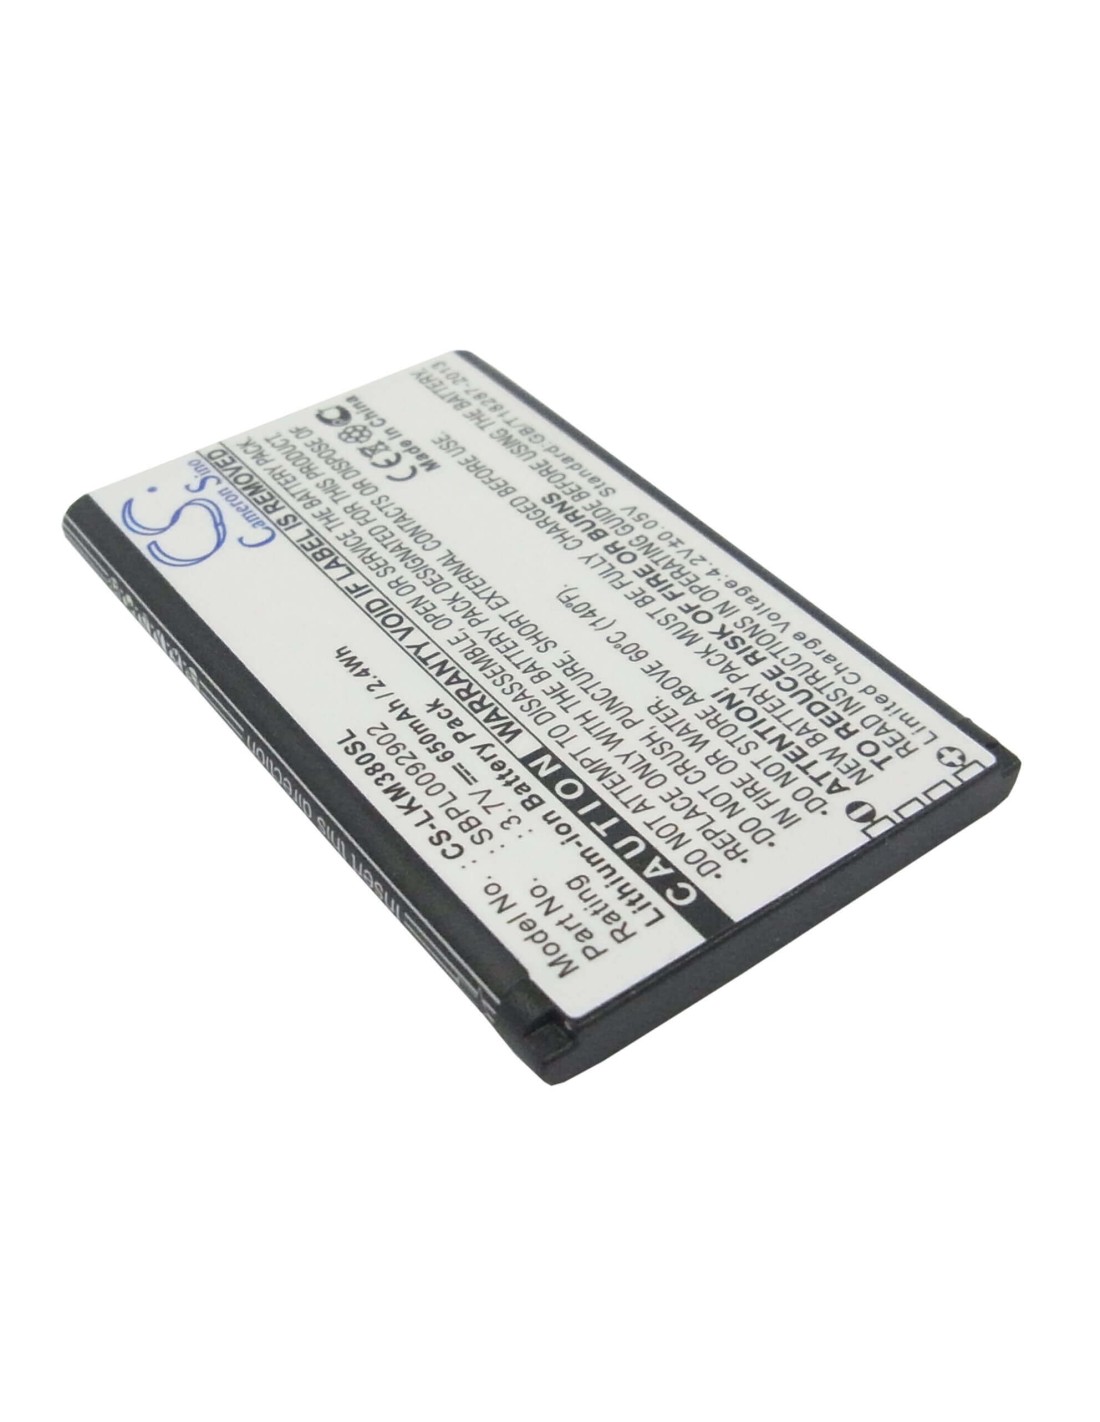 Battery for LG KM380, KT520, KF300 3.7V, 650mAh - 2.41Wh